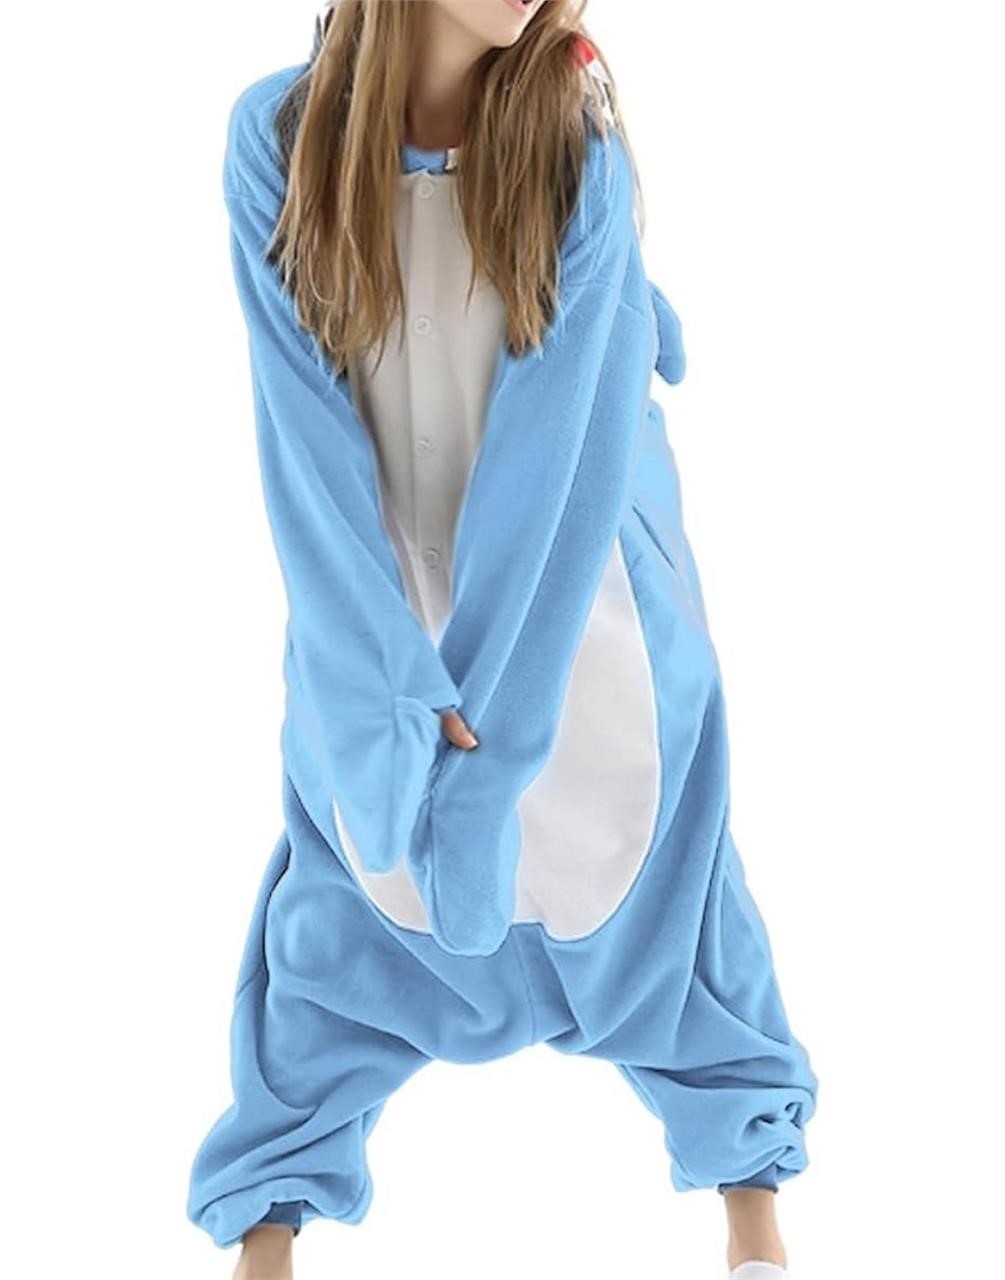 ($29) Adult Shark Pajamas Adult Cosplay,Small